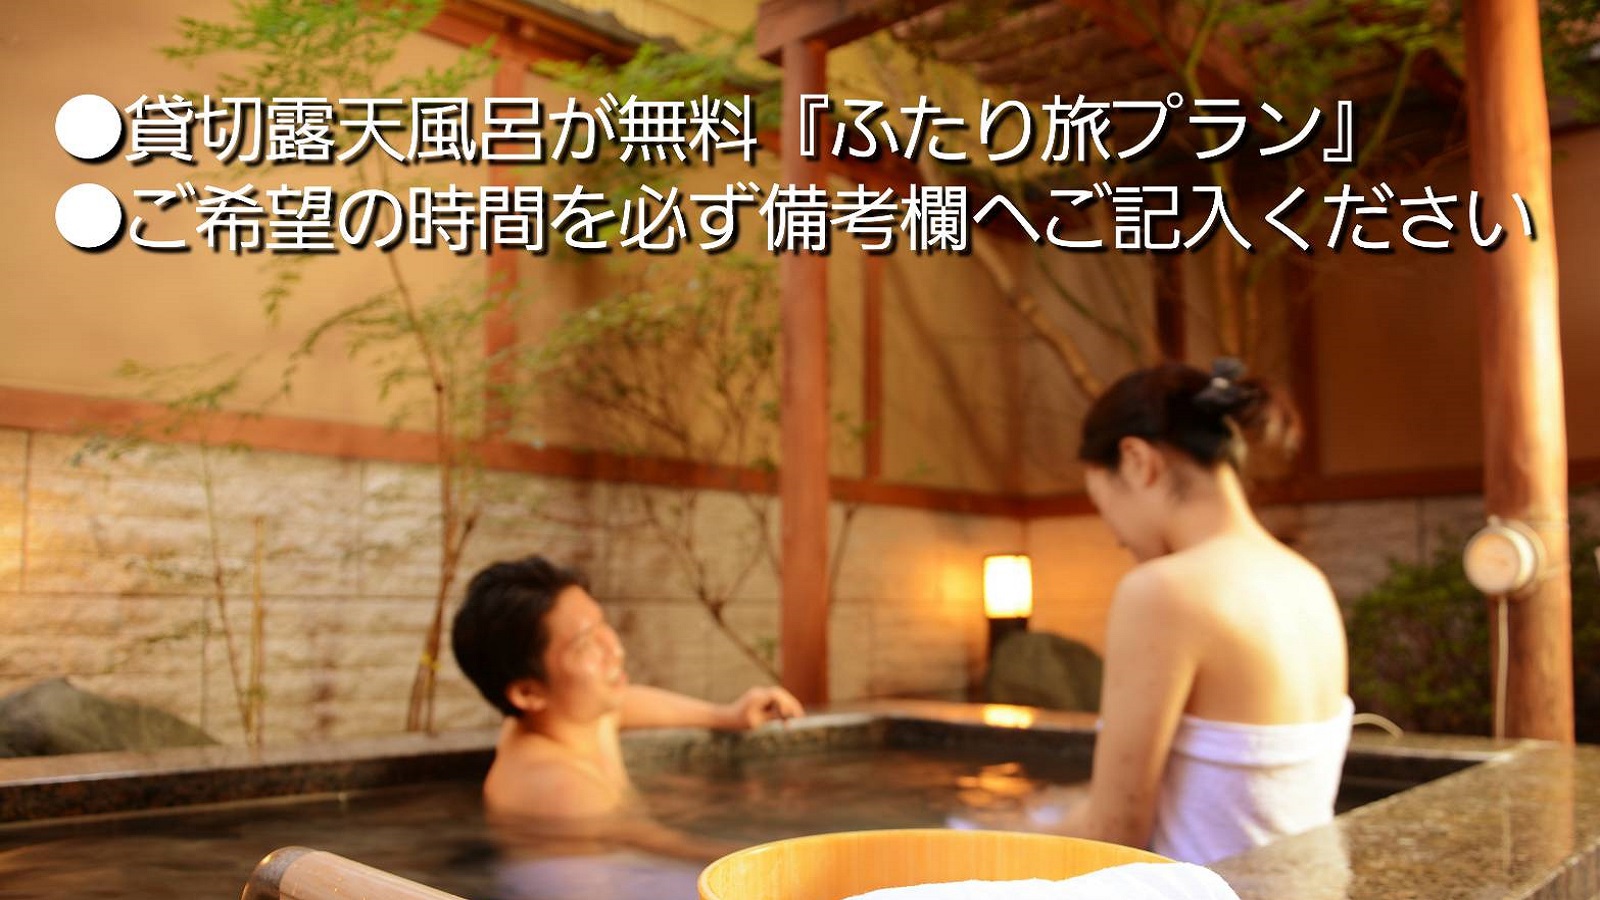 ー富士山の見える温泉旅館ー貸切り露天風呂が無料＆事前予約『ふたり旅プラン』【二食付き】